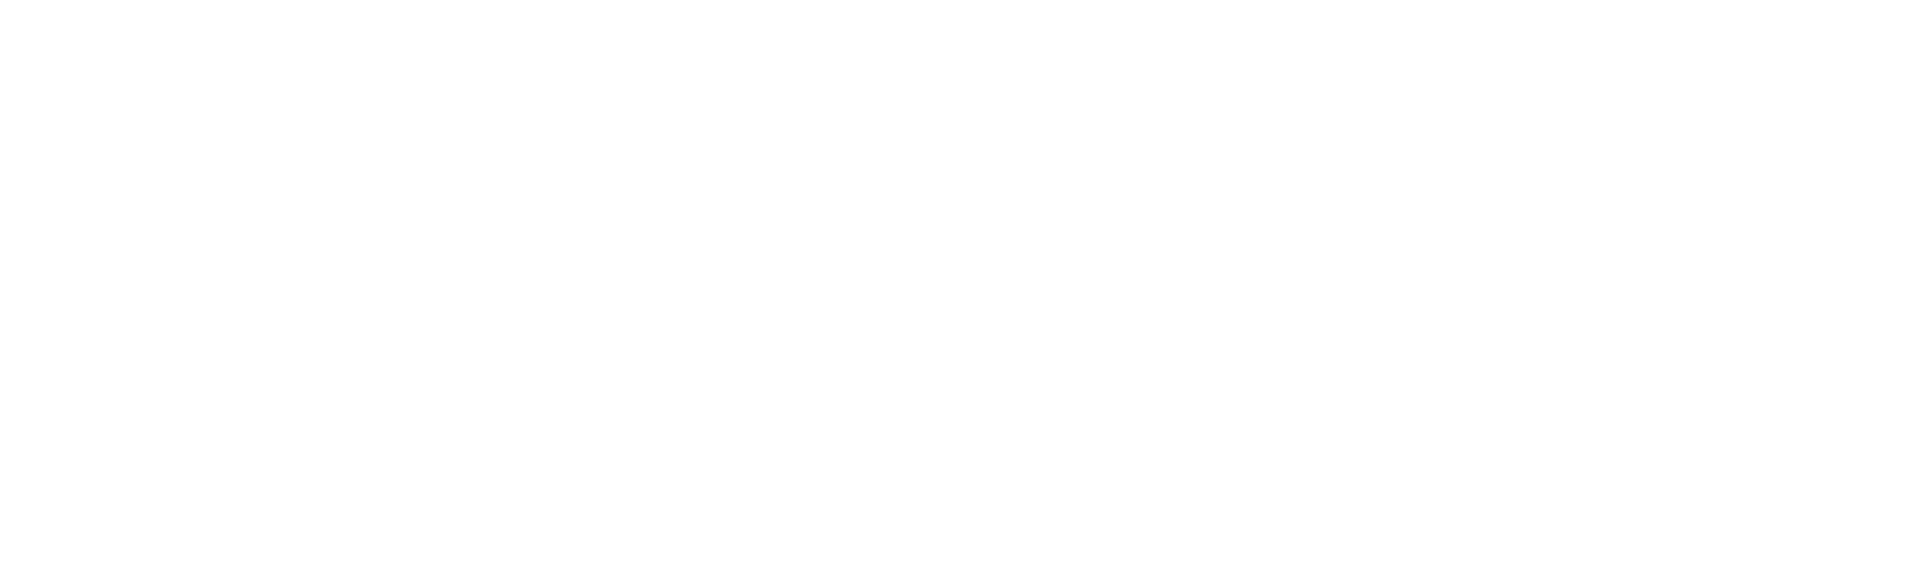 elemental magician